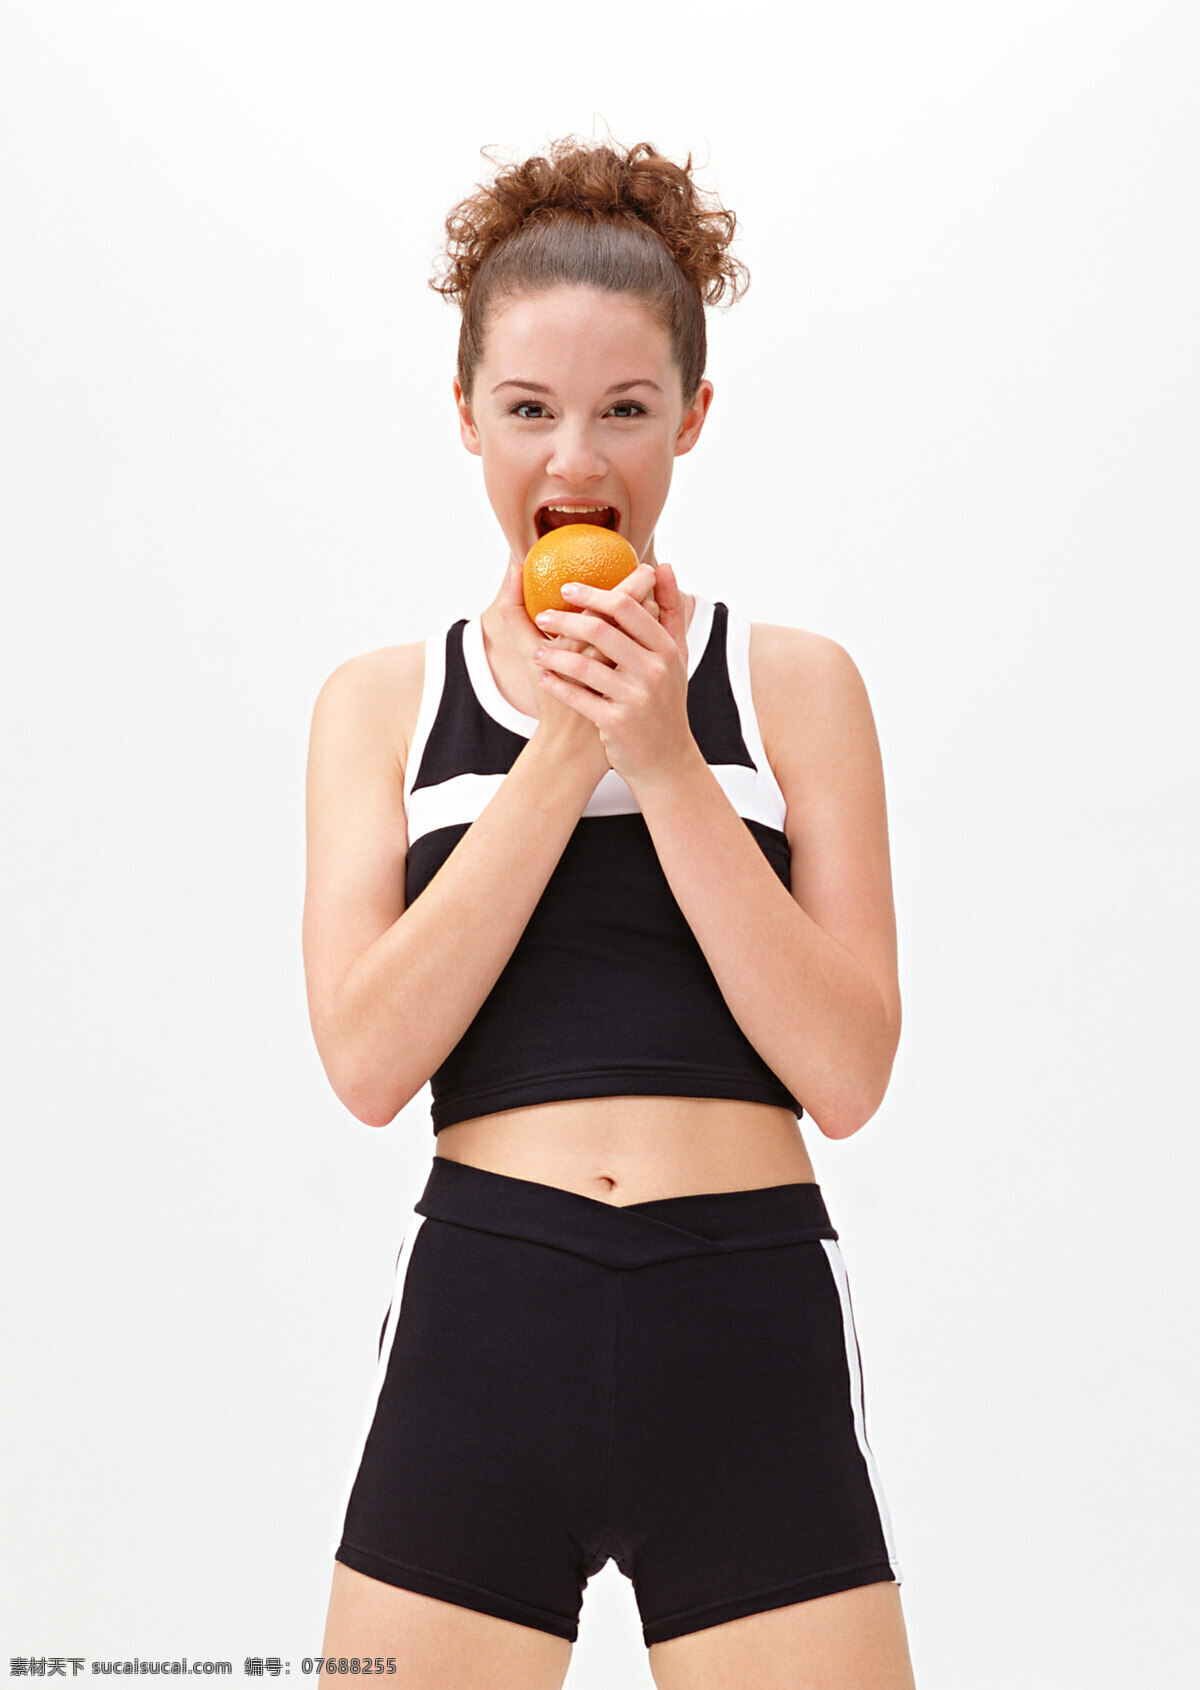 吃 水果 美女图片 外国女性 女性生活 时尚美女 性感美女 健身 健美 运动 瘦身 减肥 节食 橙子 人物图片